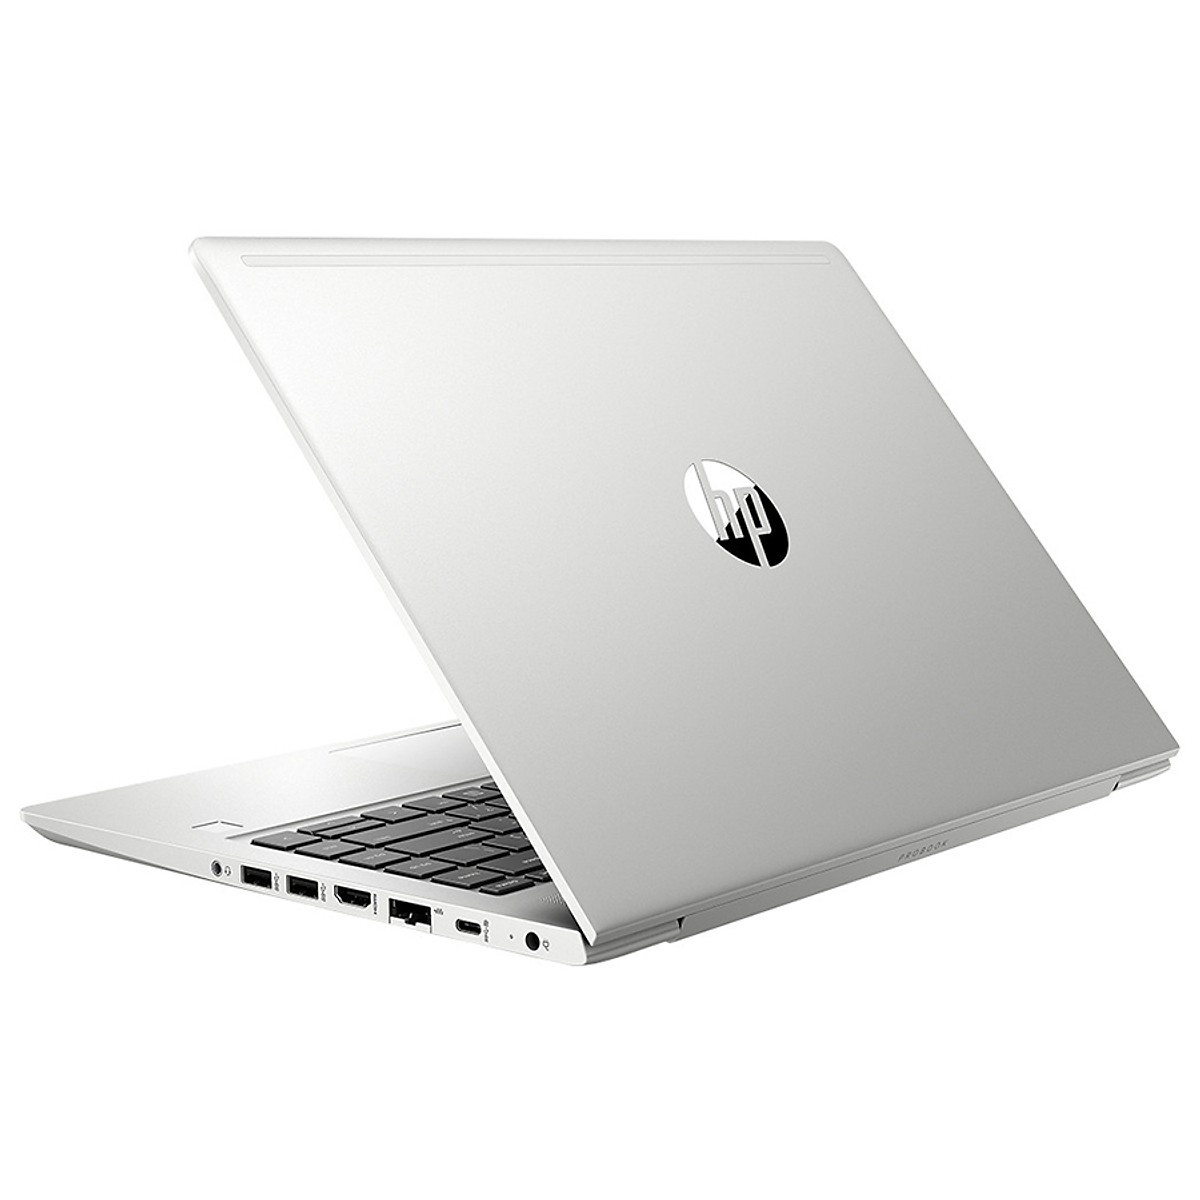 Laptop | Máy tính xách tay | HP Probook ProBook 440 G6 5YM63PA